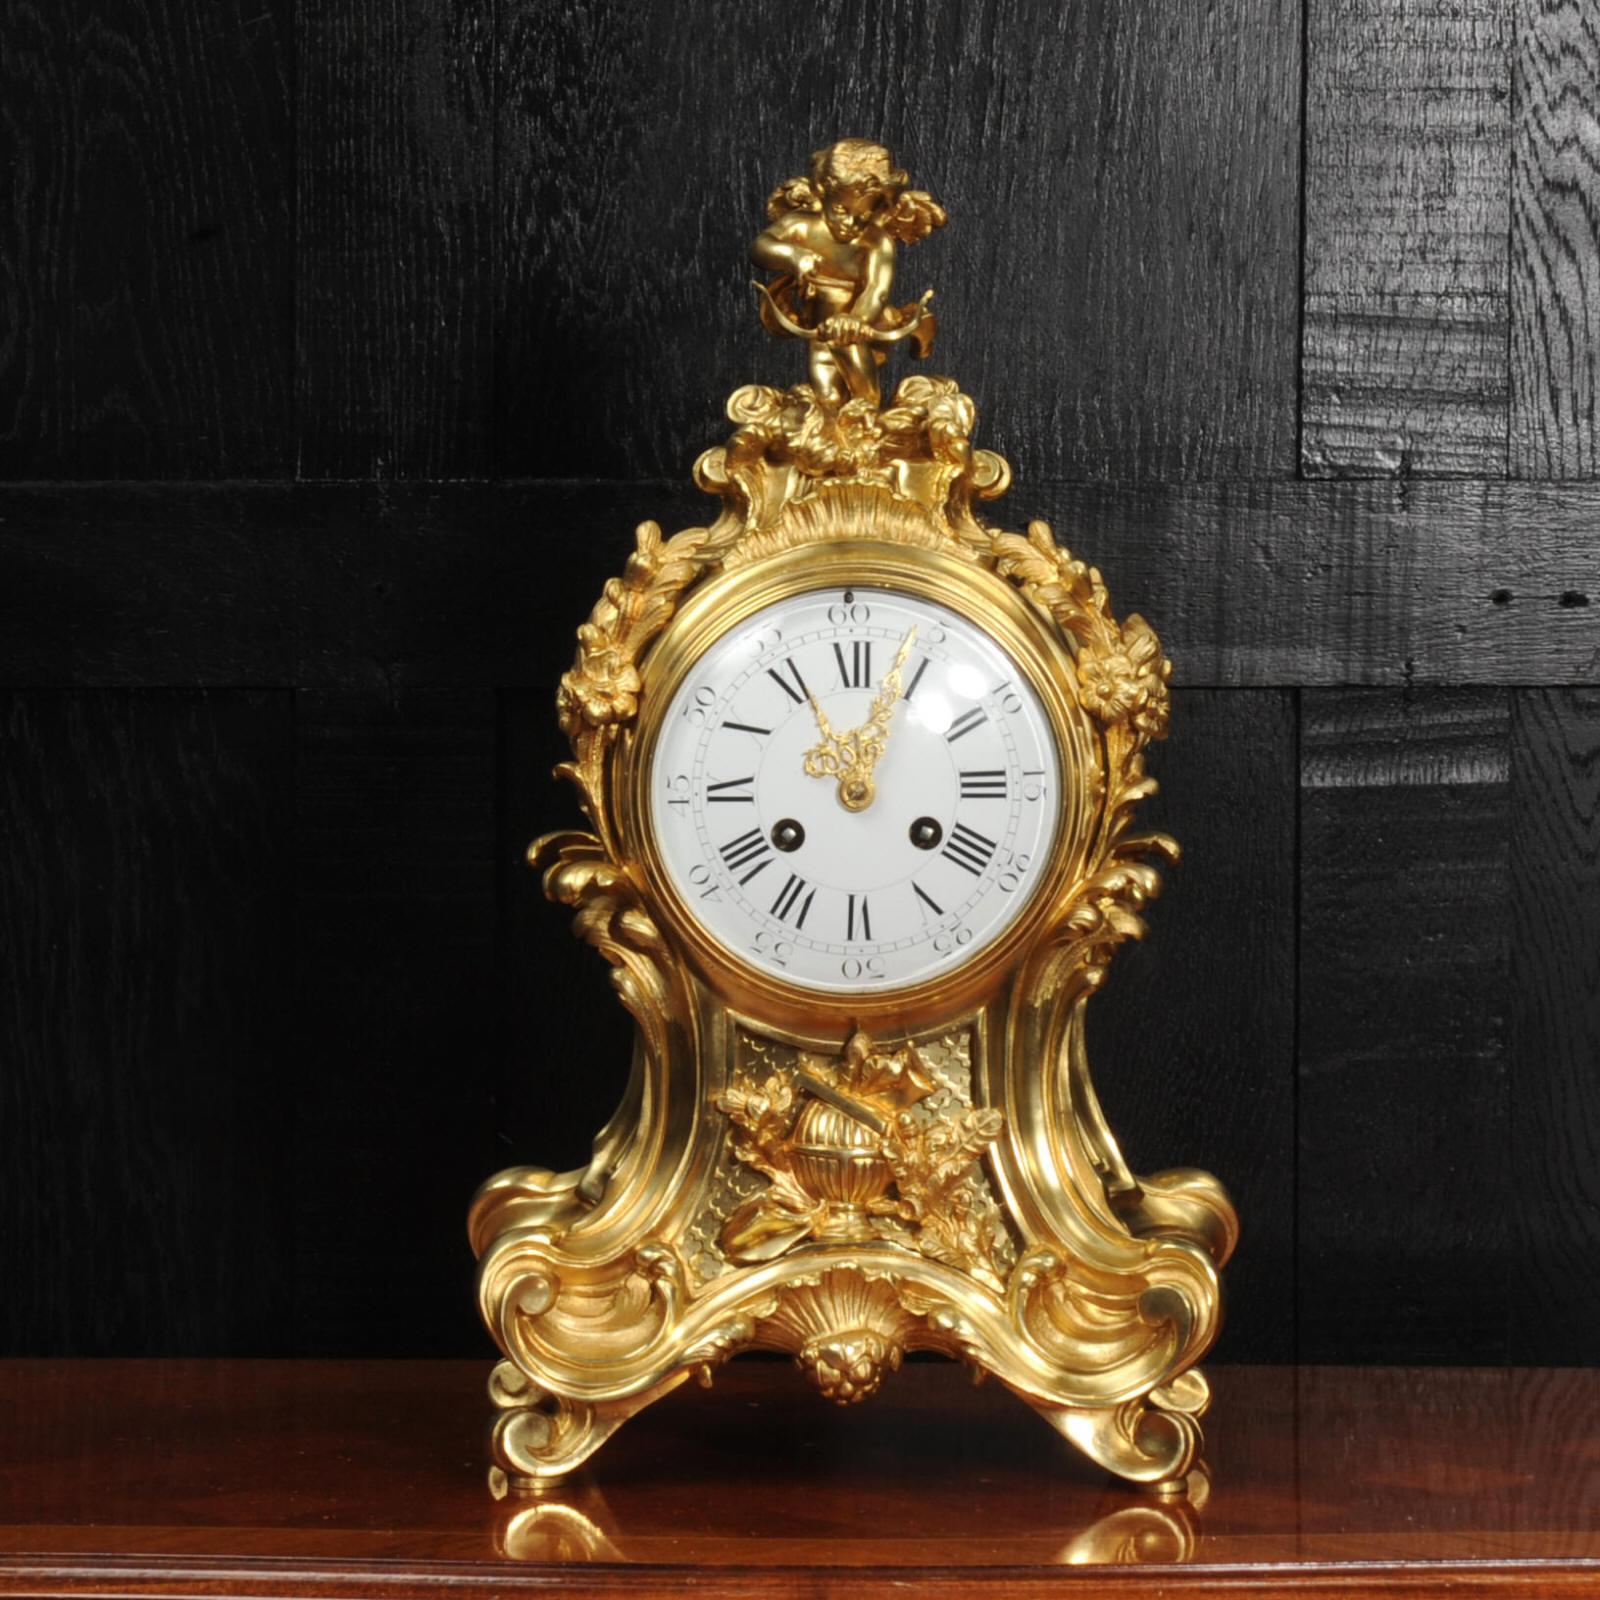 Eine sehr schöne und umfangreiche Ormolu-Uhr des Uhrmachers Vincenti. Atemberaubende Rokoko-Ballonform mit geschwungenen Akanthus-Schwänzen, Schriftrollen und floralen Verzierungen. An der Spitze eine wunderschön modellierte Figur des Amors, der